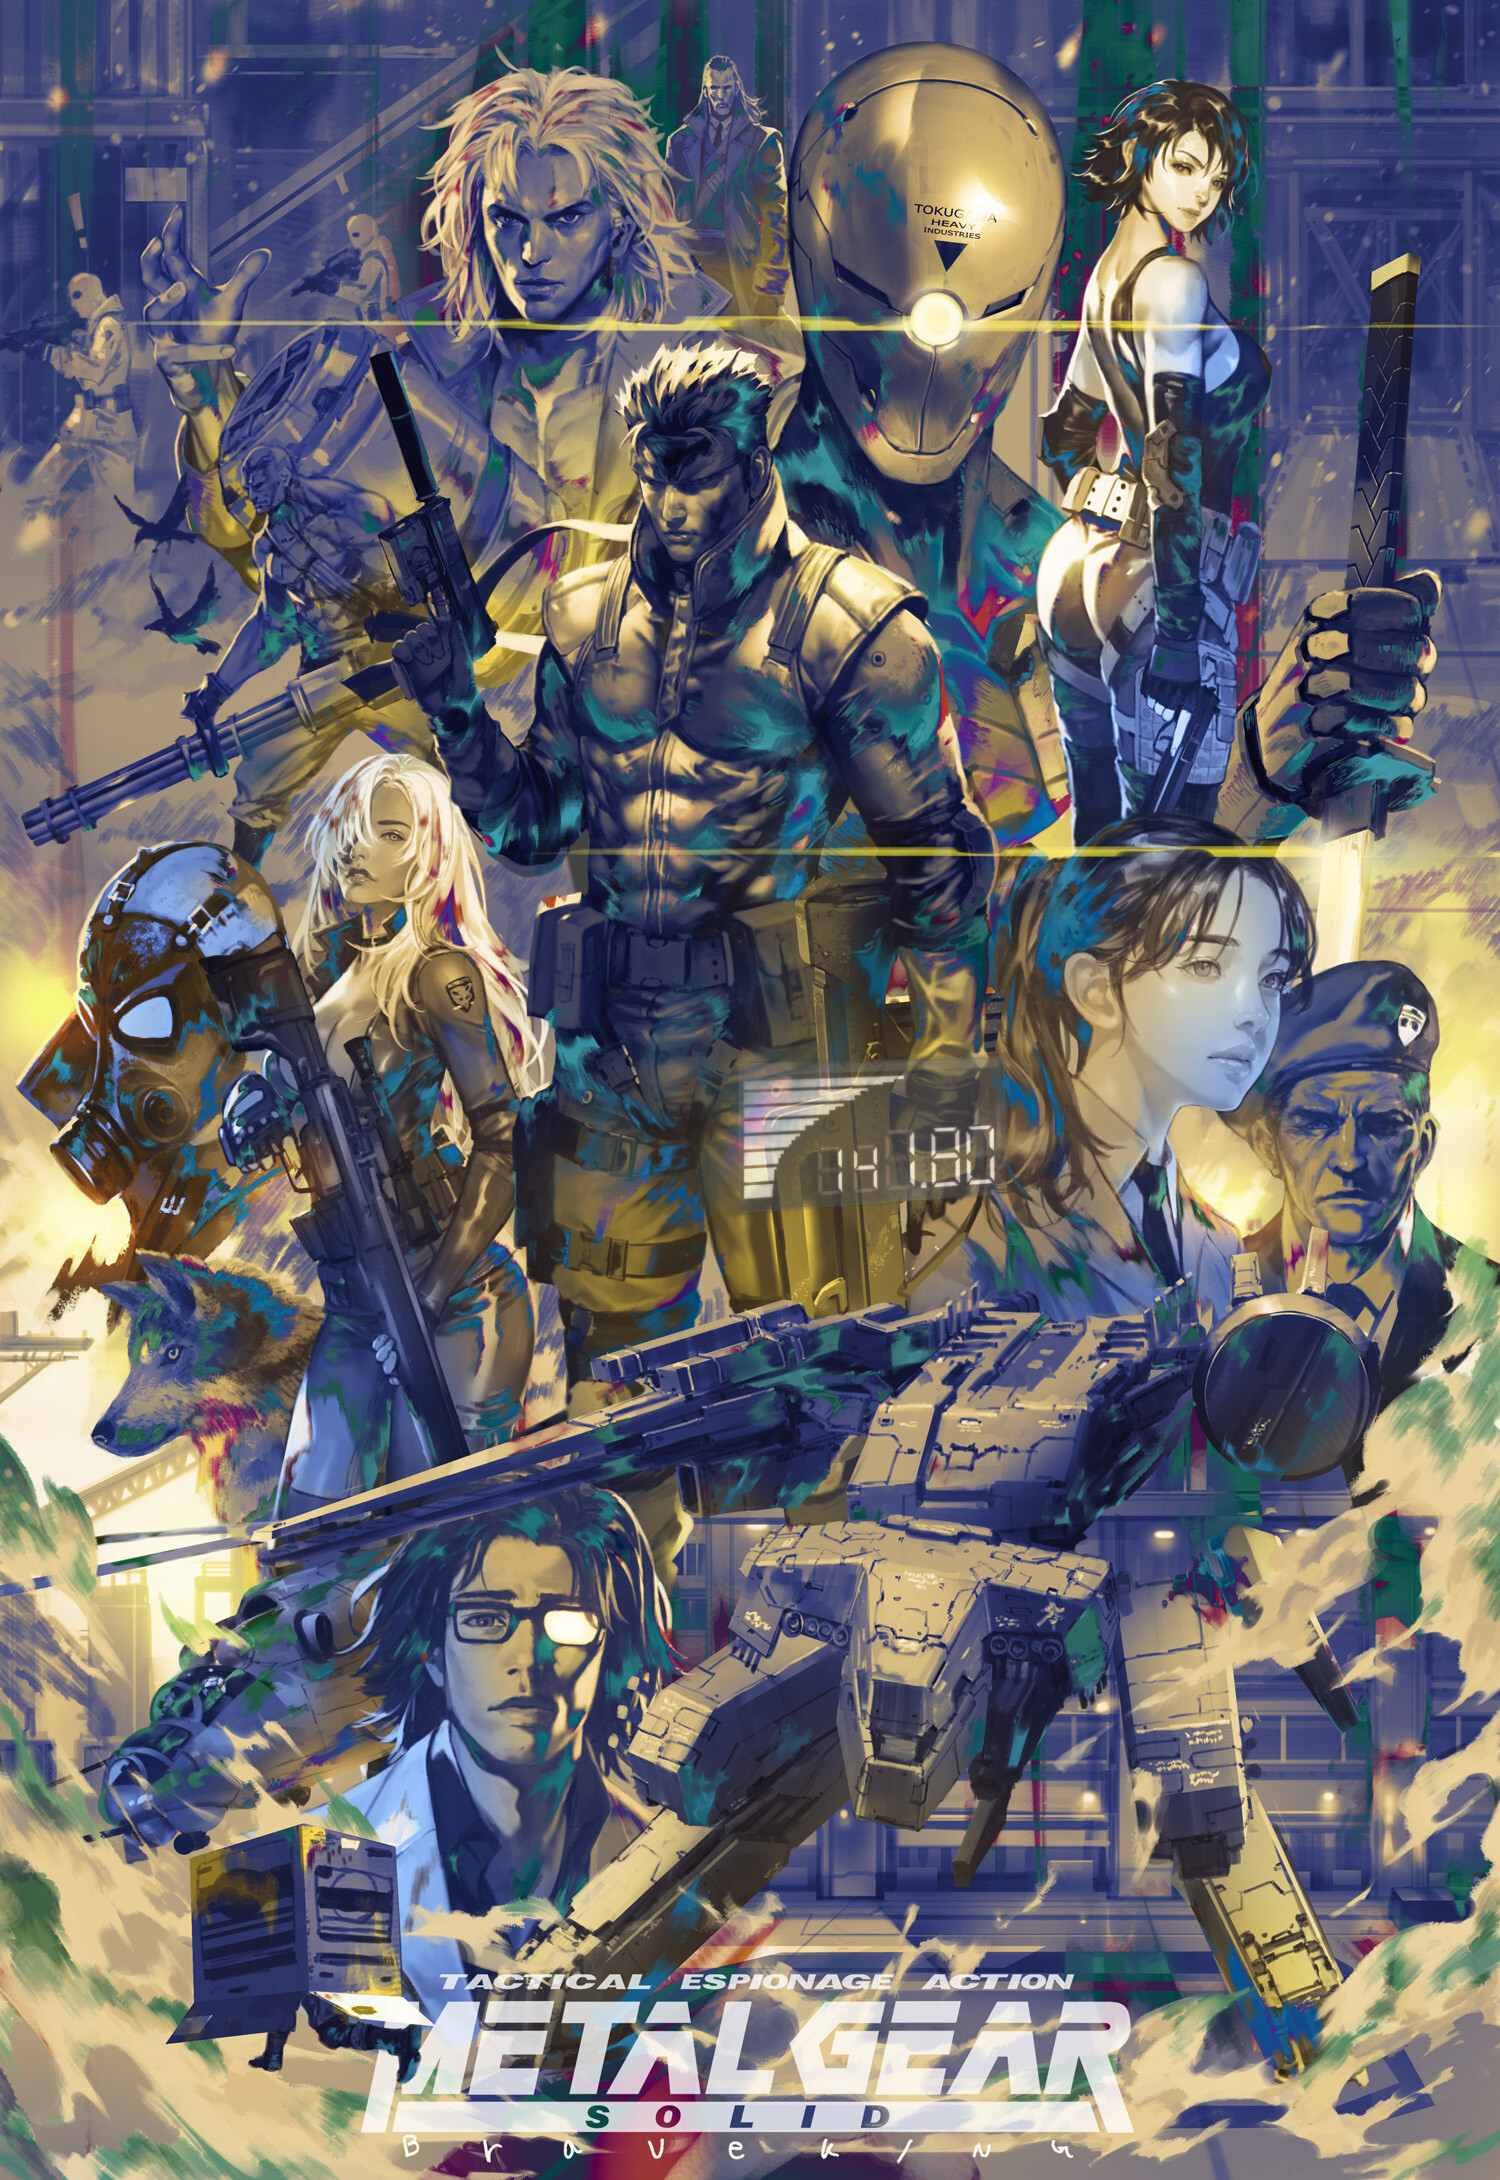 General 1500x2180 fantasy art artwork Metal Gear Solid video game art